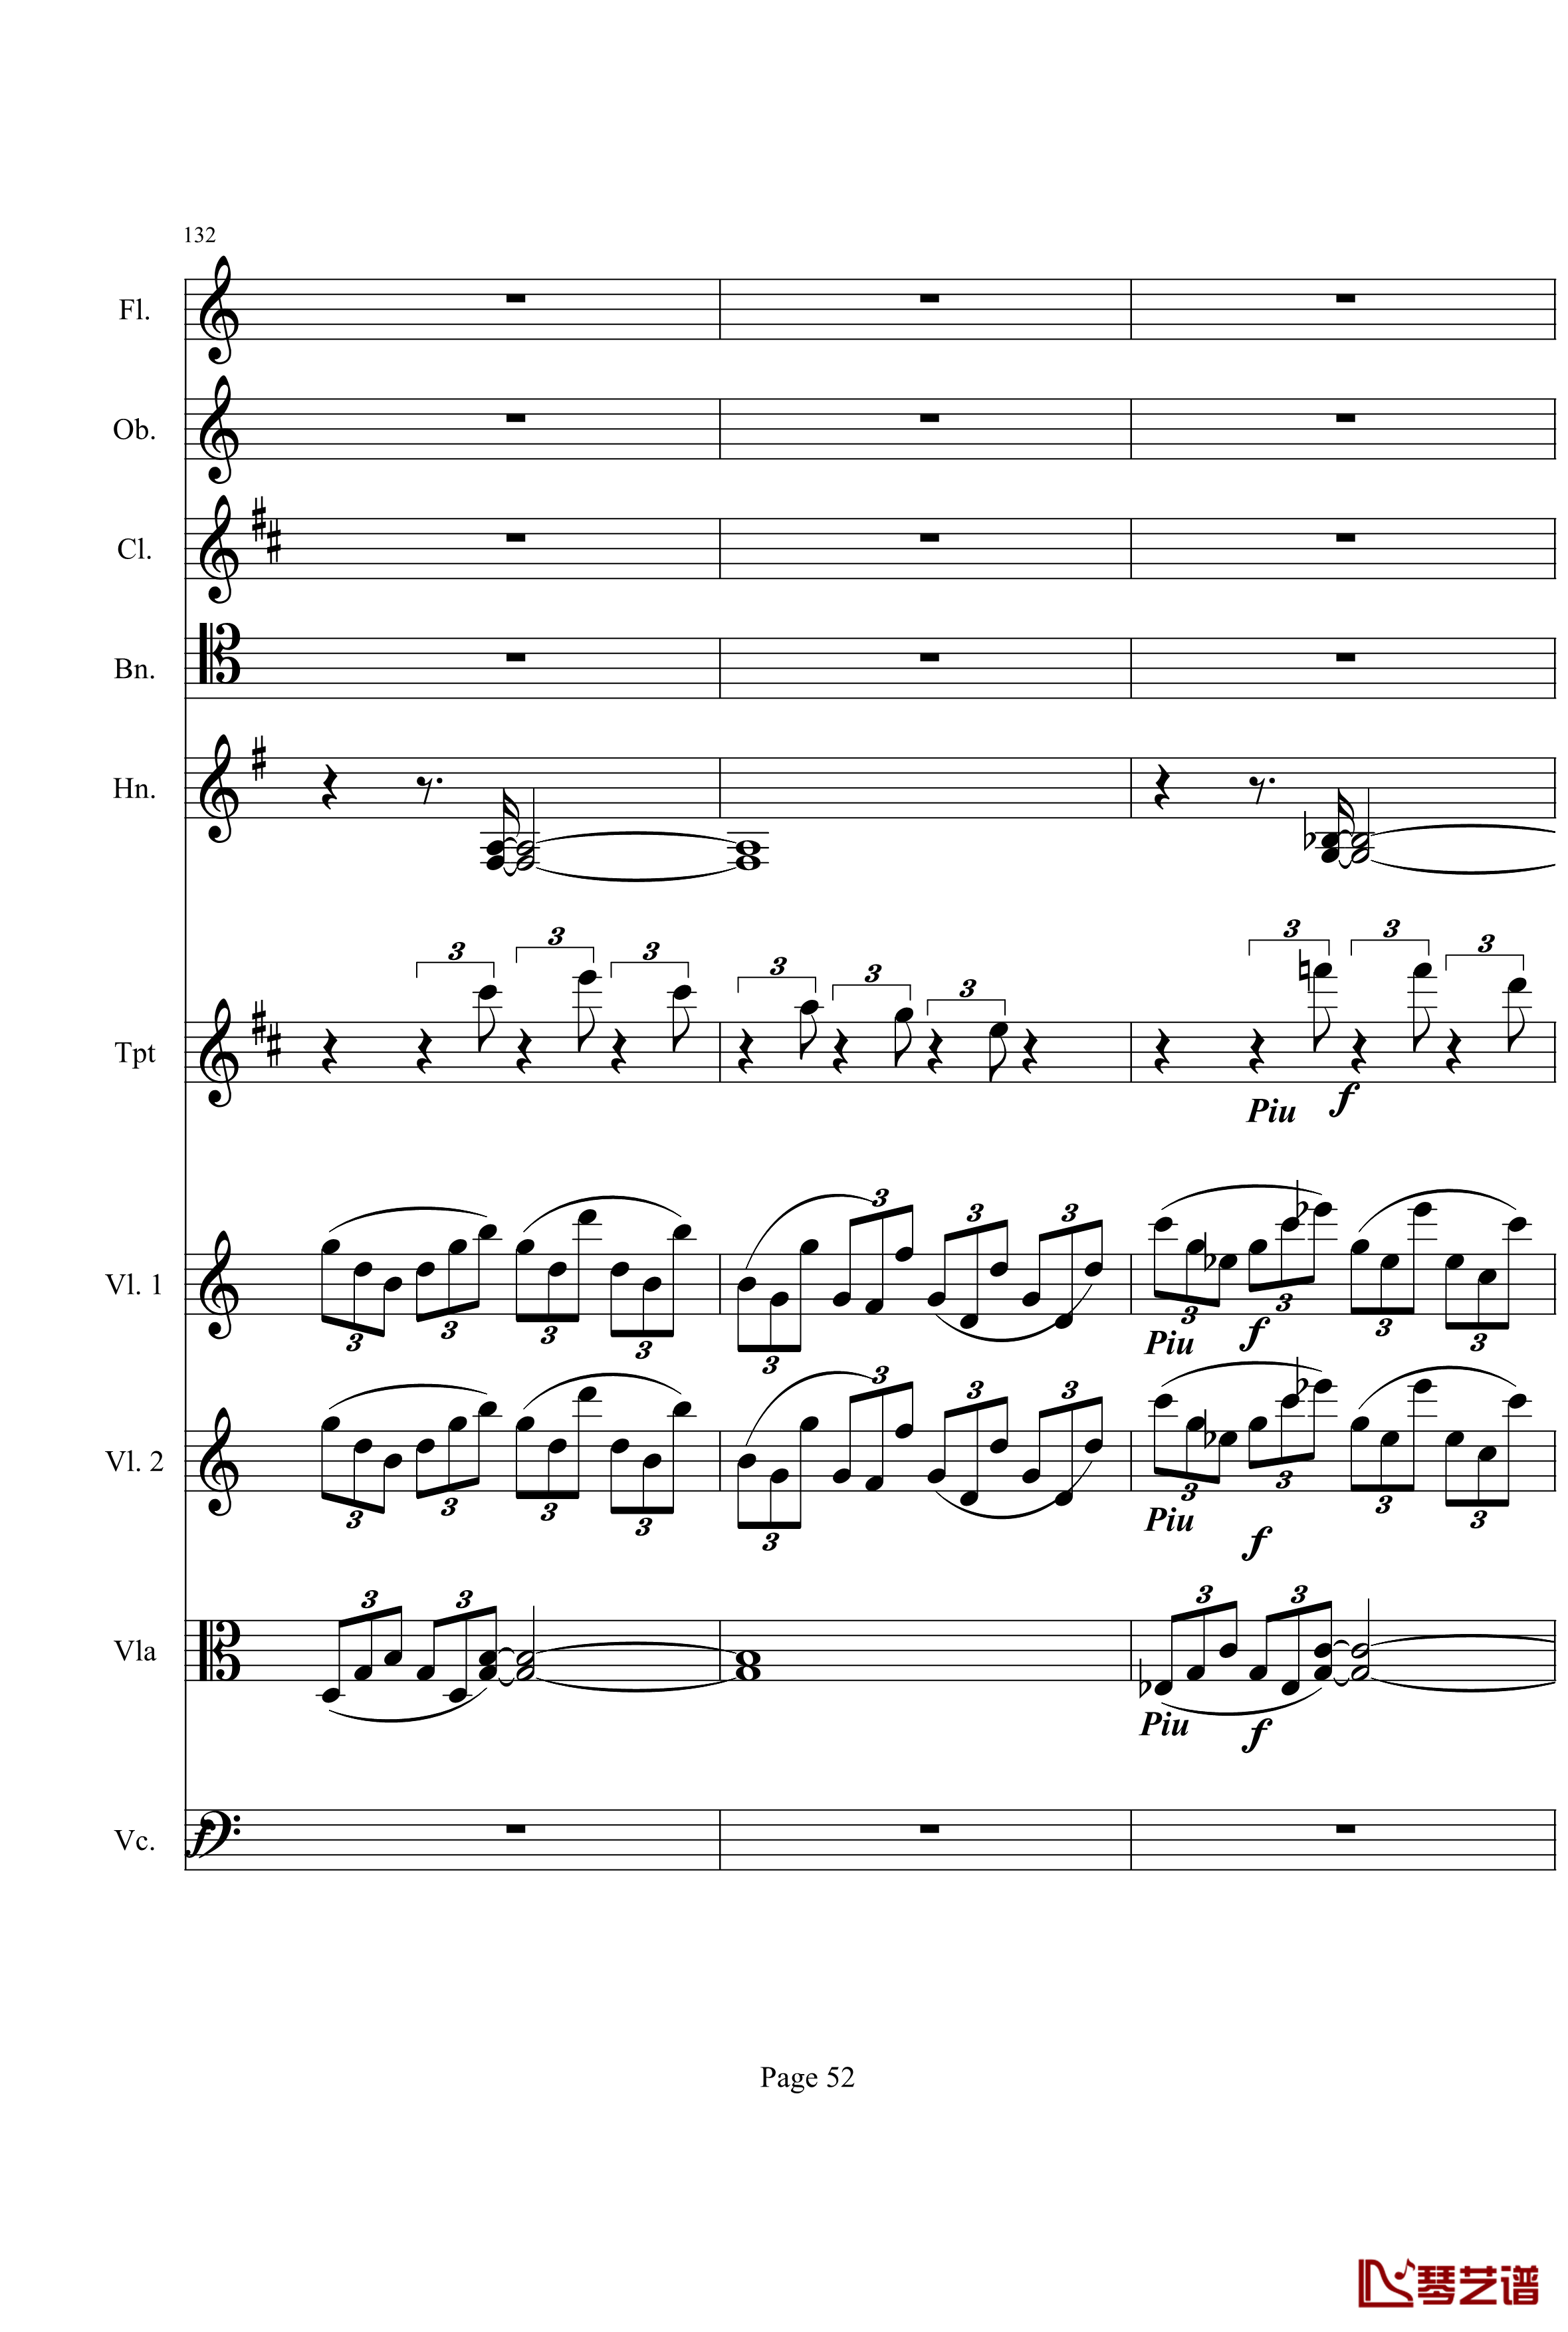 奏鸣曲之交响钢琴谱-第21-Ⅰ-贝多芬-beethoven52